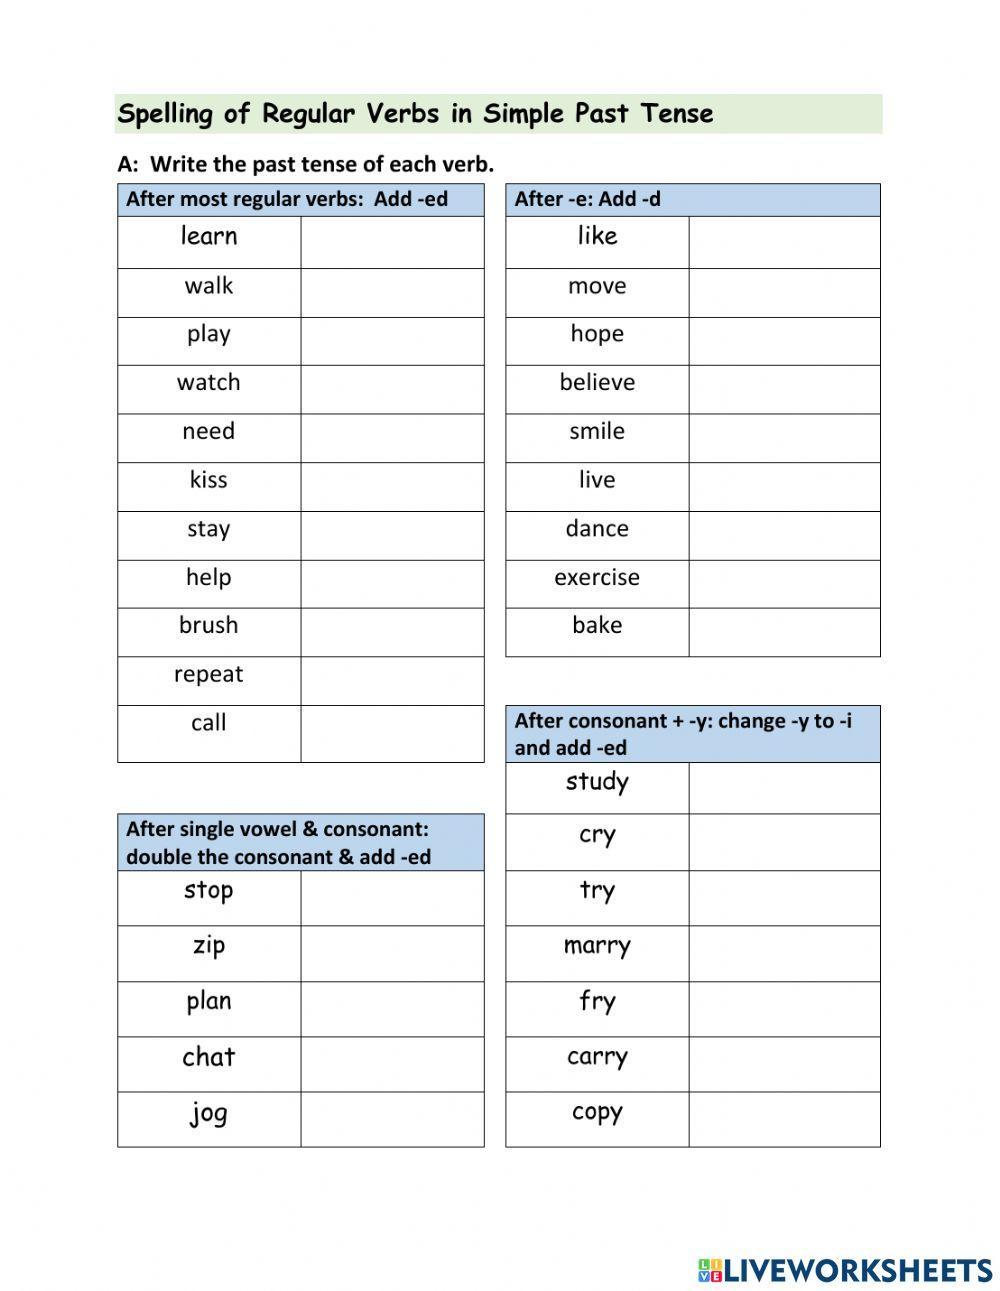 Spelling of Regular Verbs in Simple Past Tense